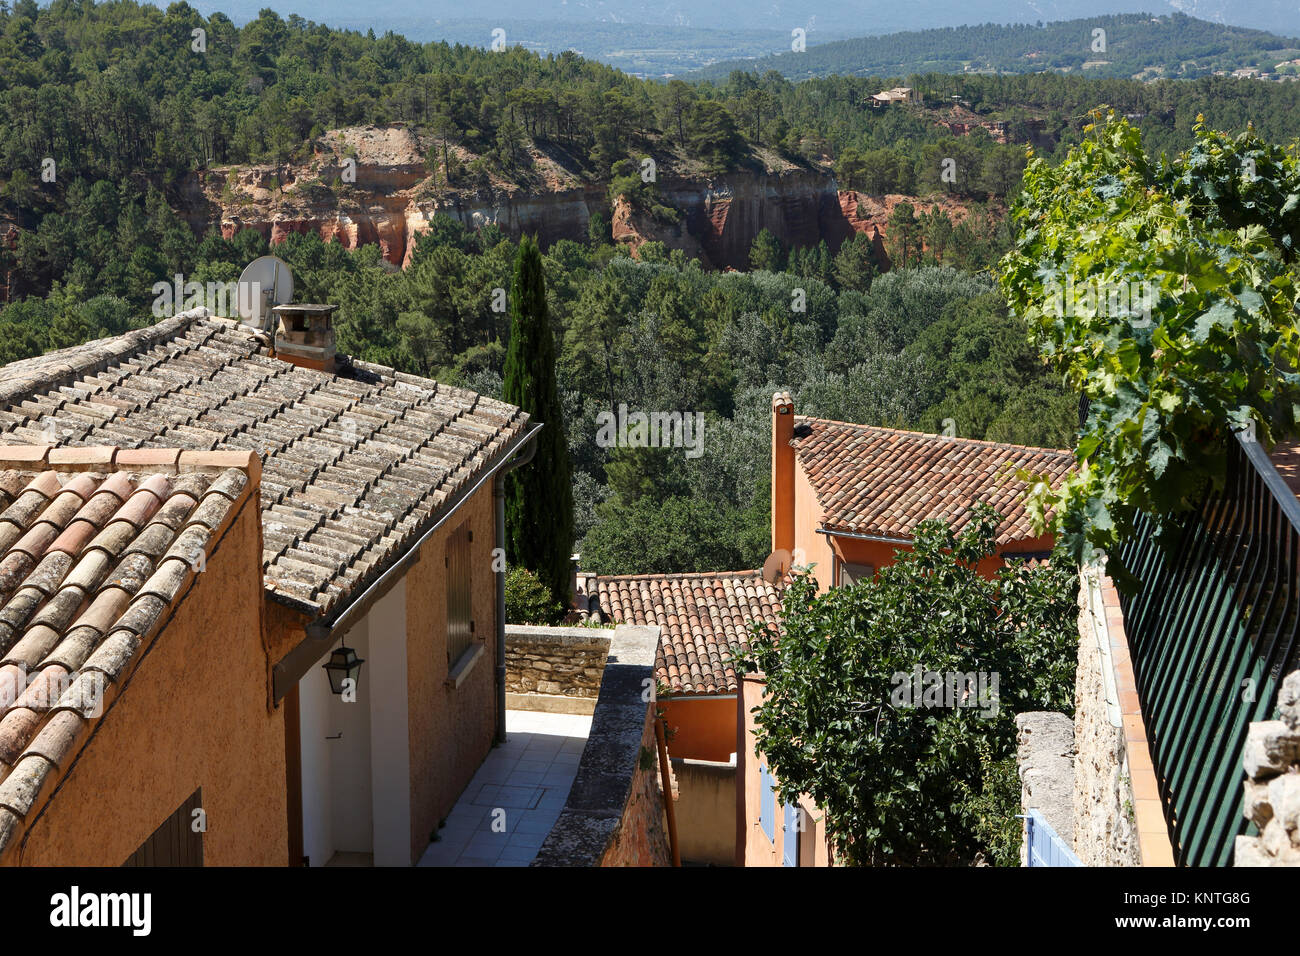 Vue sur la vieille ville, plus beaux villages de France, village rouge, Roussillon (Vaucluse), Provence-Alpes-Côte d'Azur, France Banque D'Images